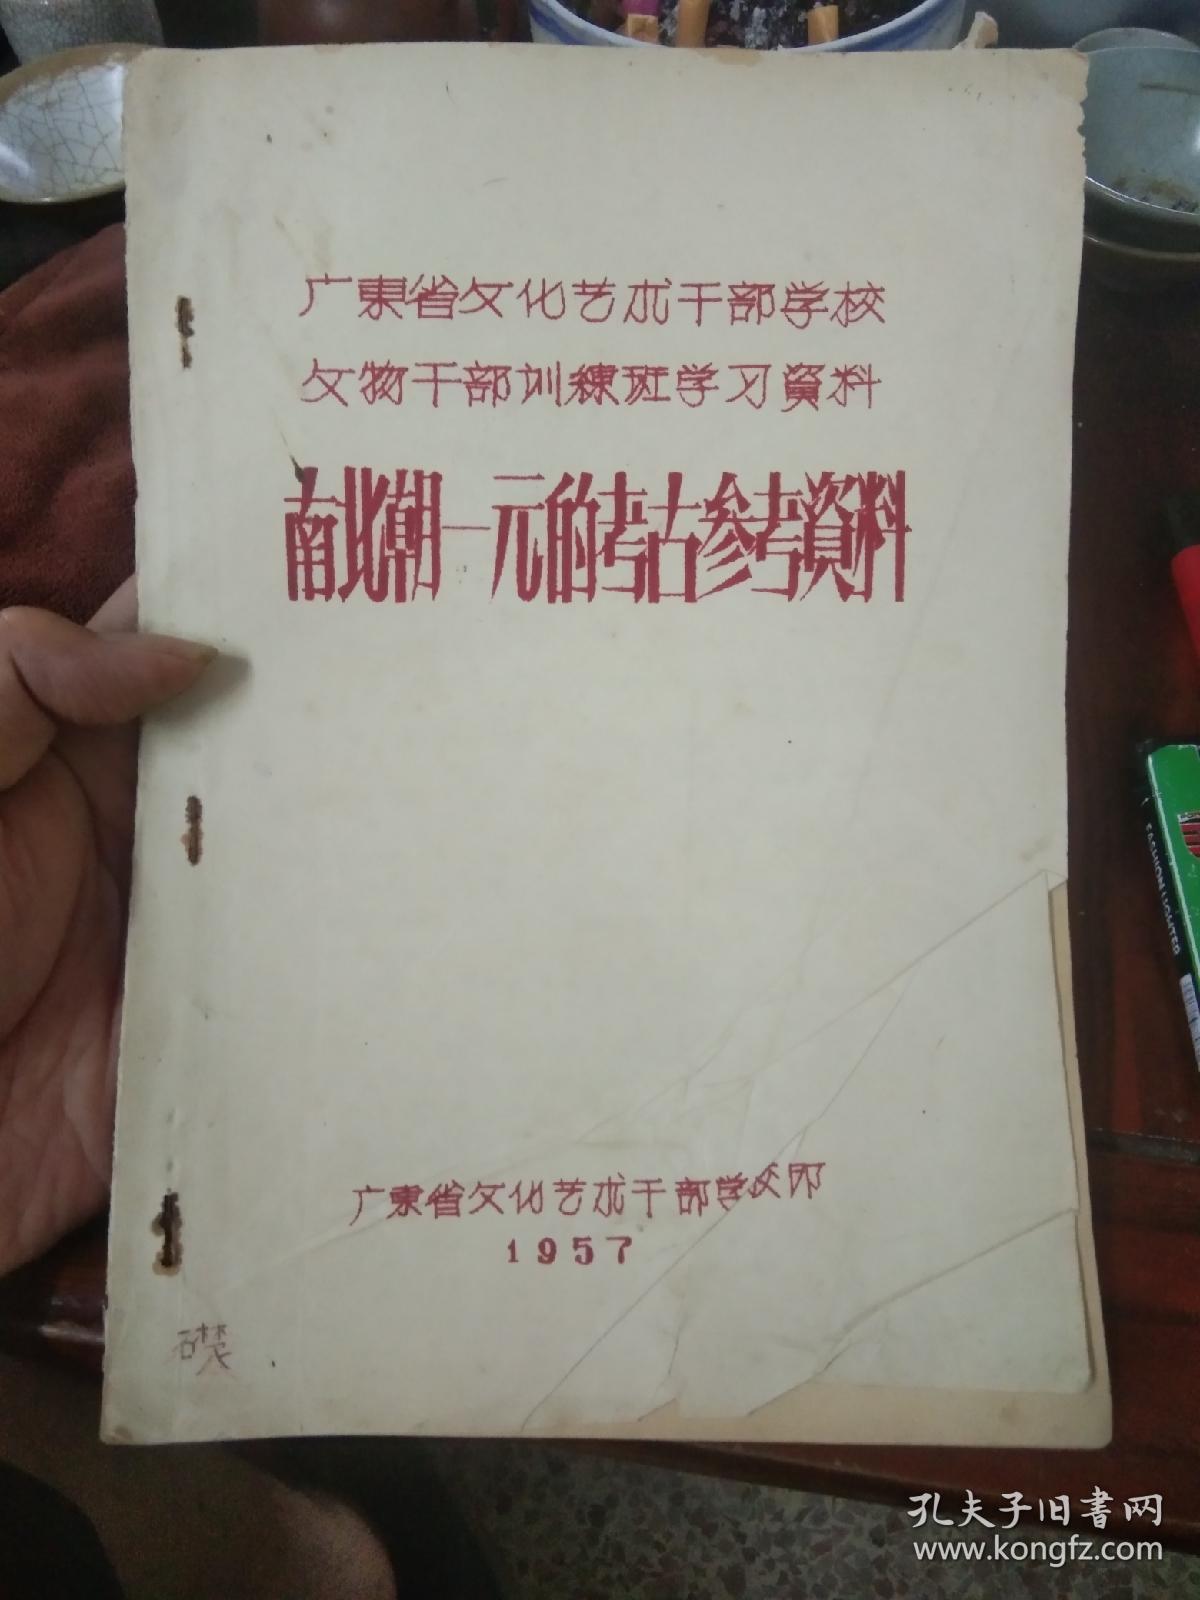 1957年 广东省文化艺术干部学校 文物干部培训班学习资料 《南北朝-元的考古参考资料》油印版本